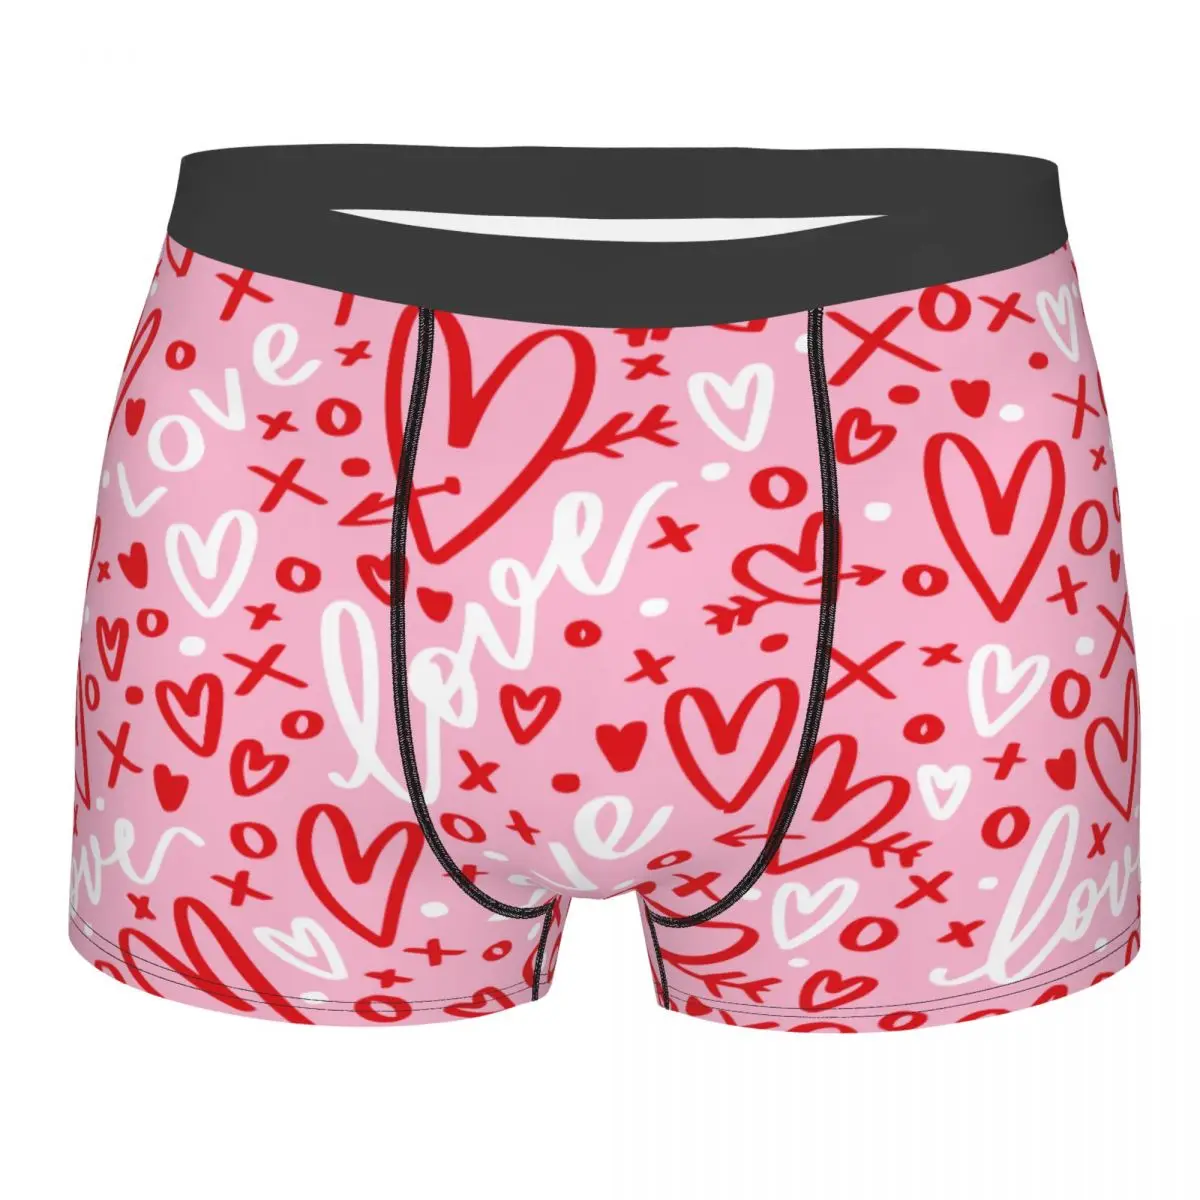 Шорты-трусы Humor Boxer с розовым сердечком, мужское нижнее белье, дышащие трусы для мужчин 0